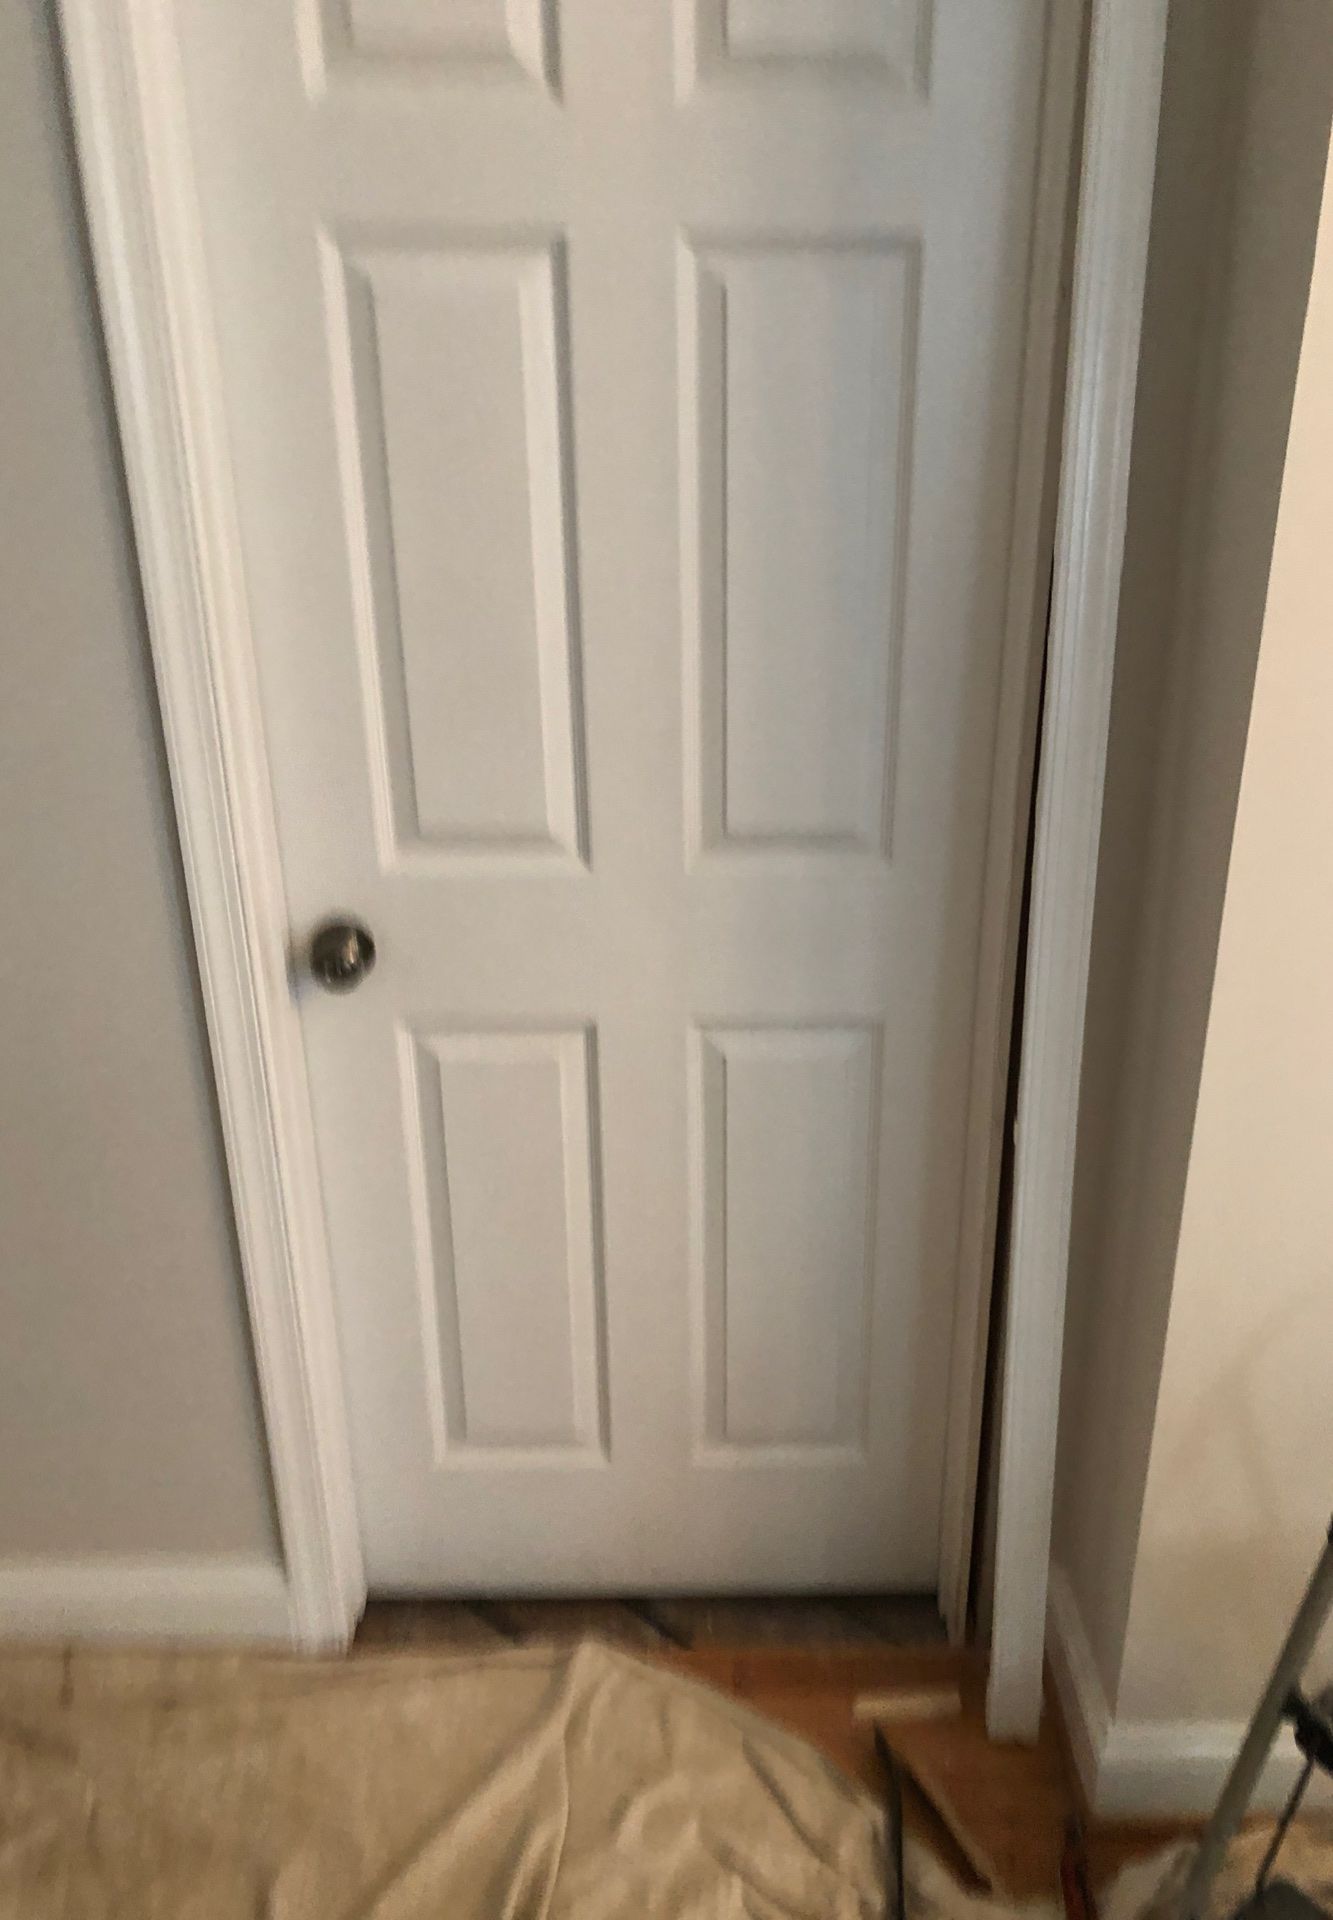 30” wide 6 panel hollow core door